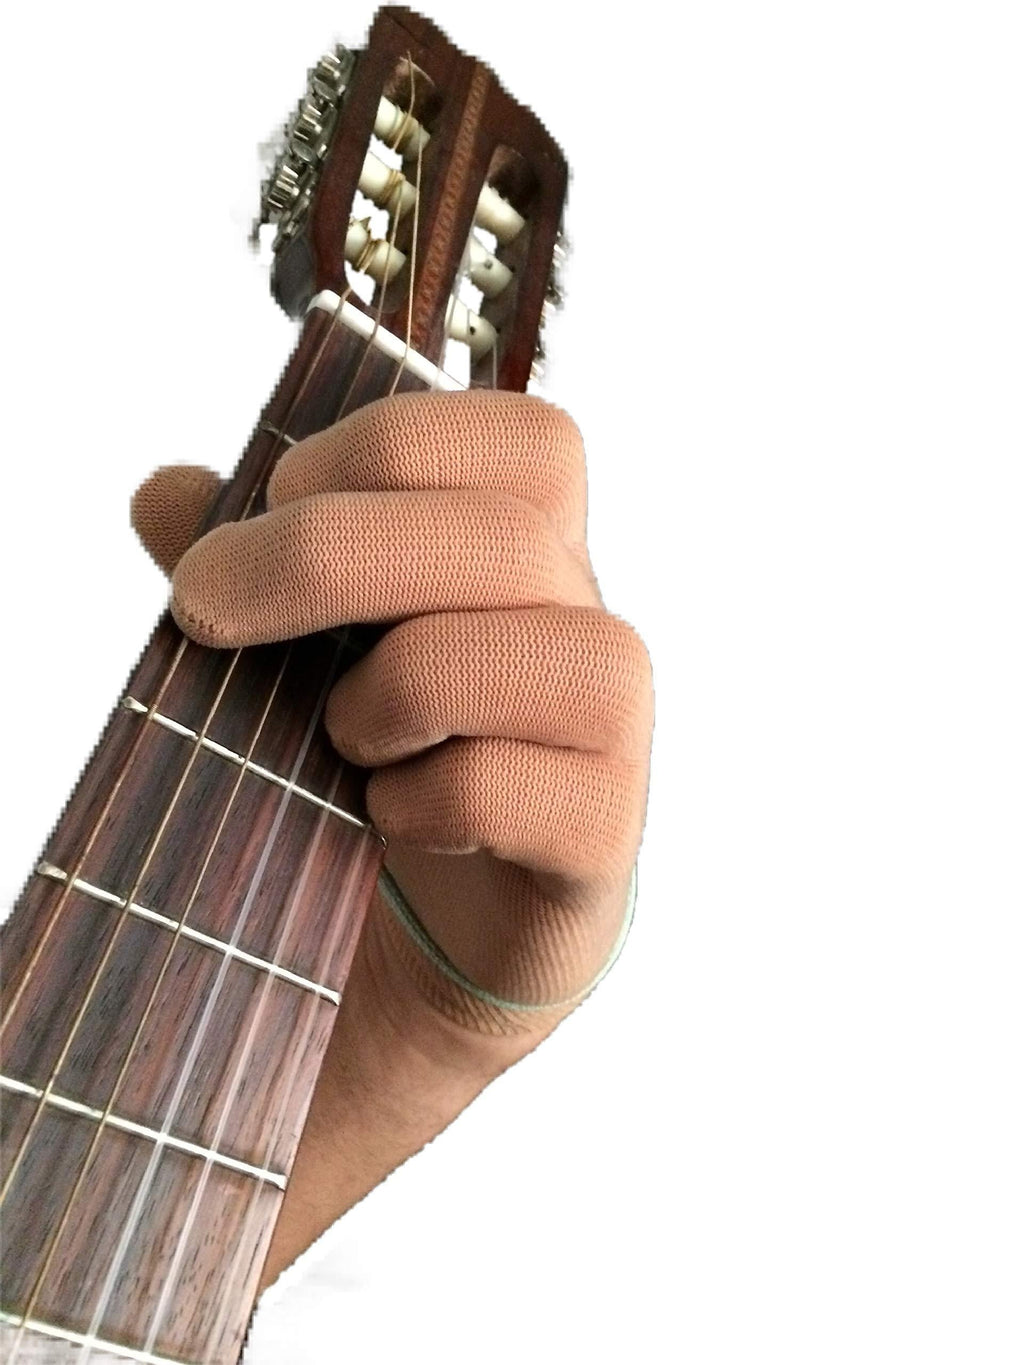 Guitar Glove Bass Glove -XL- 2 Gloves - Finger issues, cuts